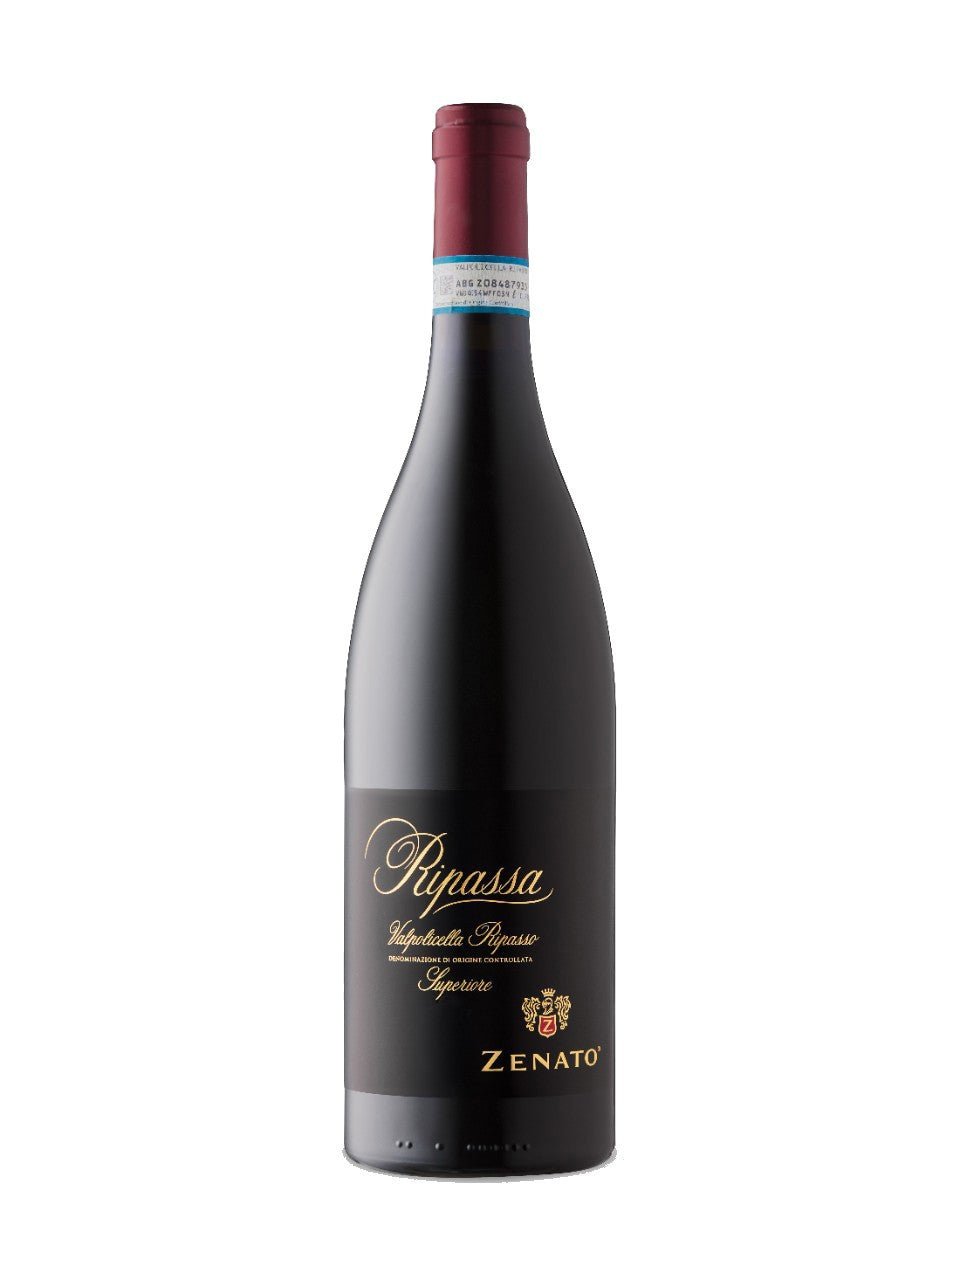 Zenato Ripassa Valpolicella Superiore | Exquisite Wine & Alcohol Gift Delivery Toronto Canada | Vyno